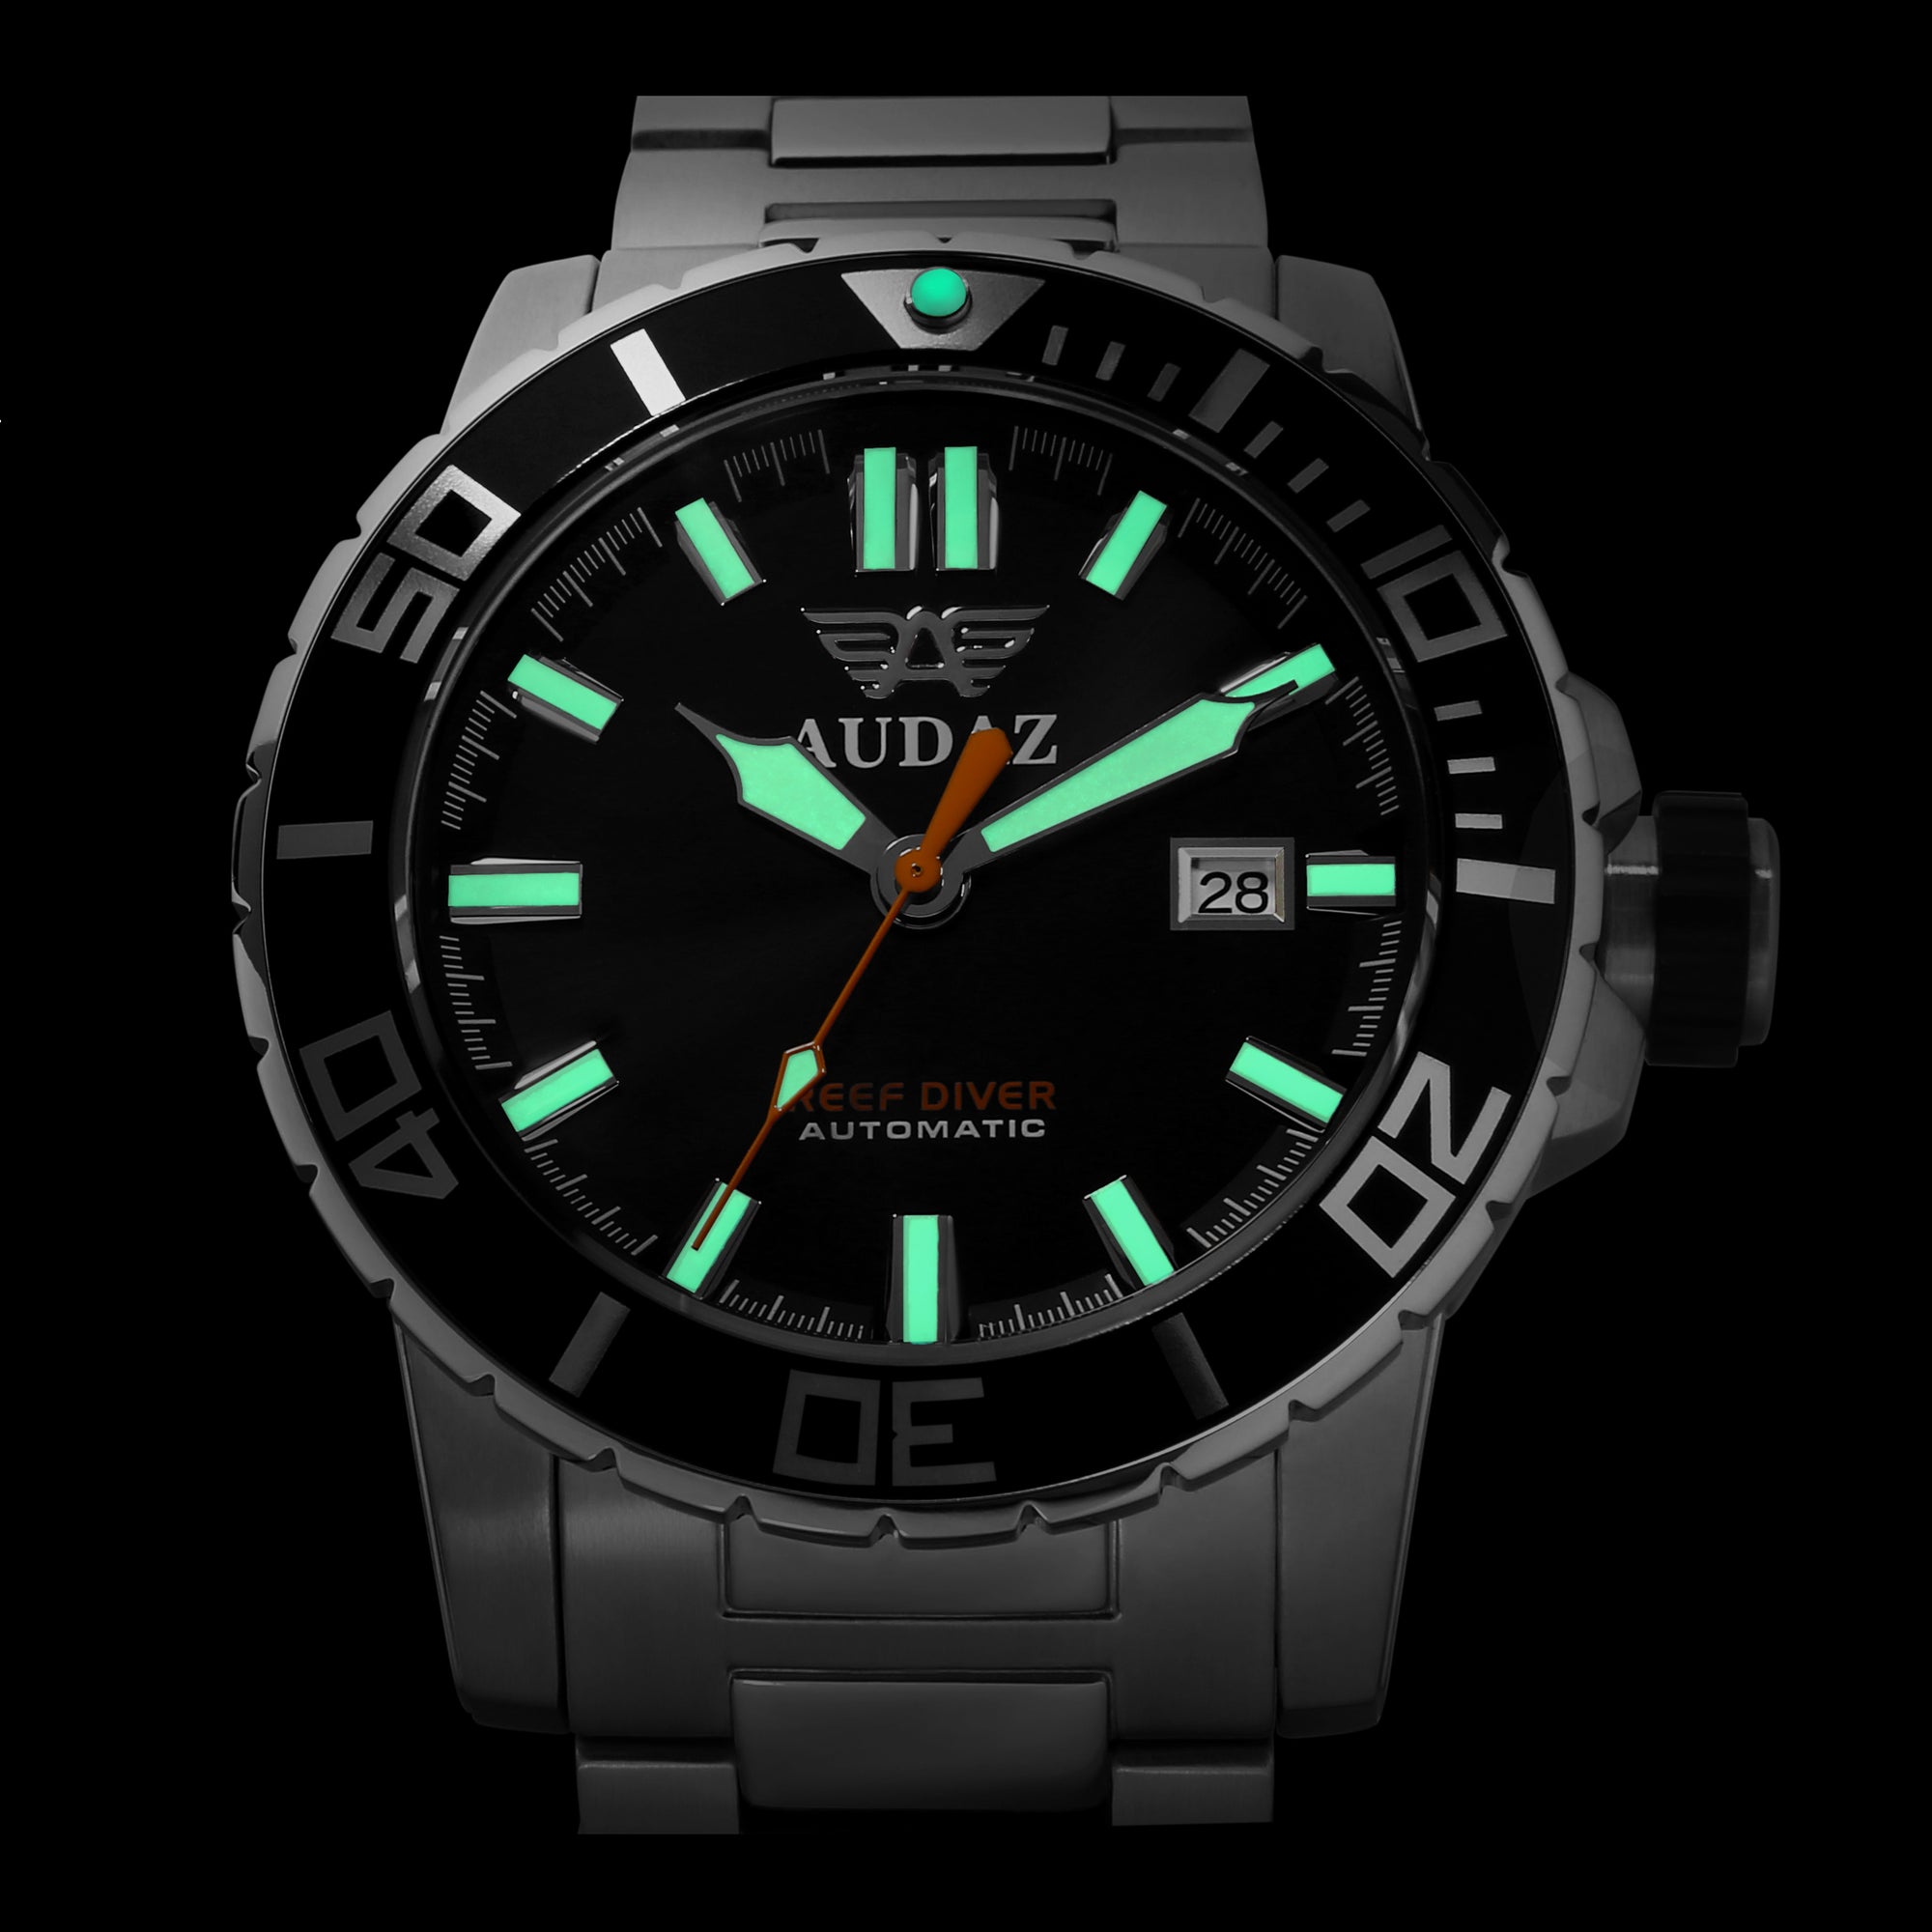 Reef Diver Watches ADZ-2040-08